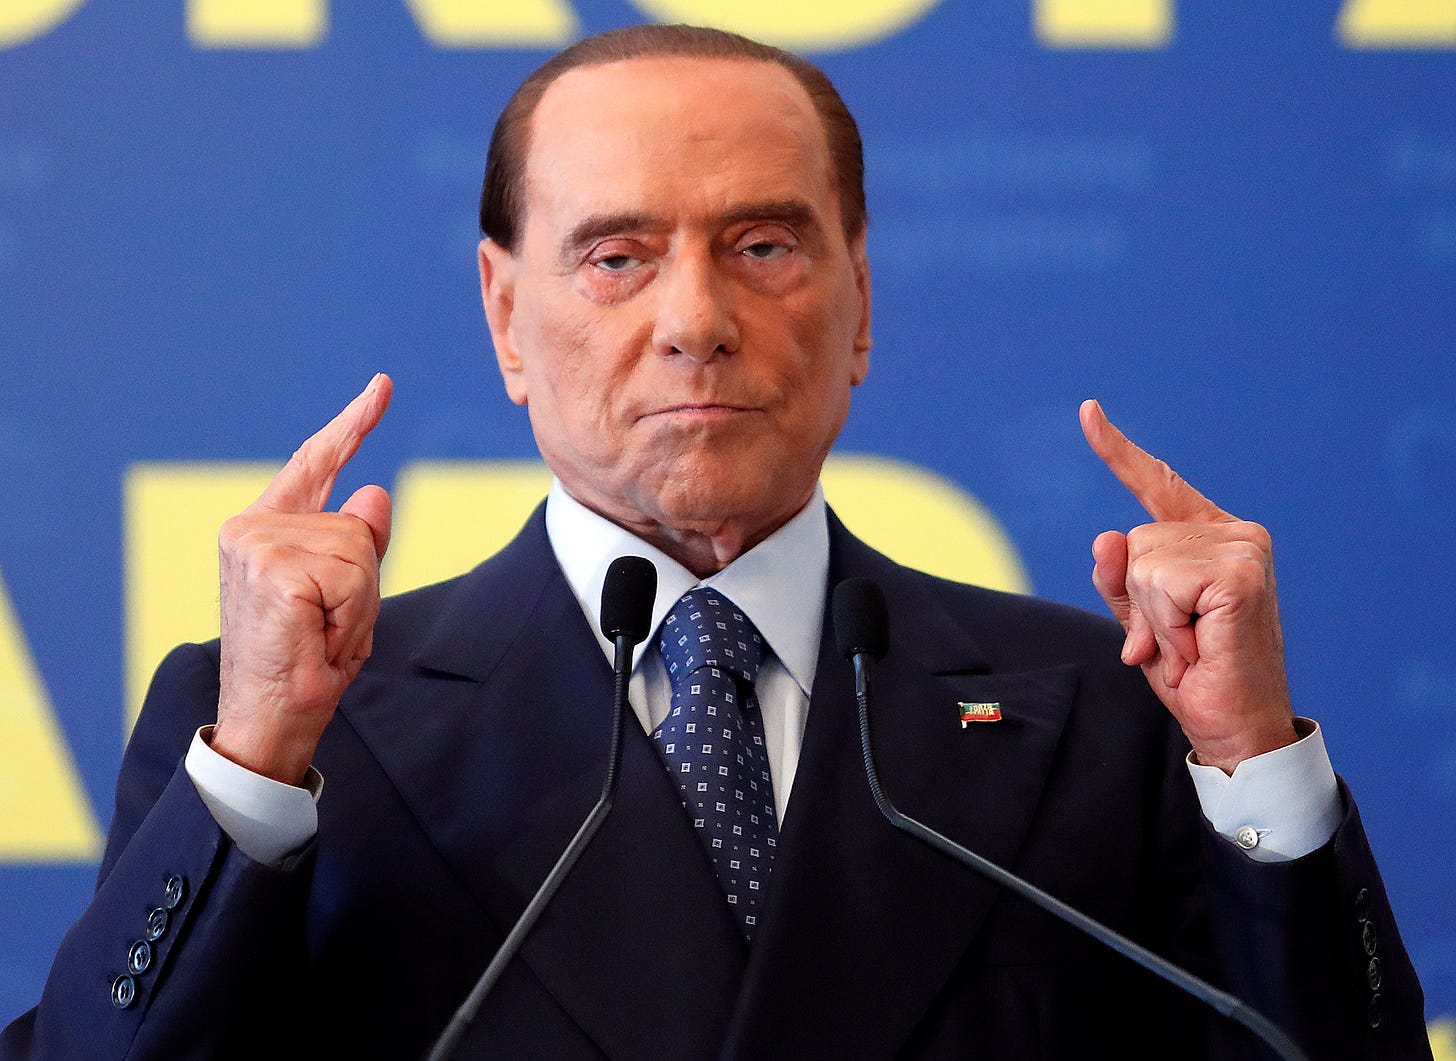 Le énième retour de Berlusconi - Le Temps